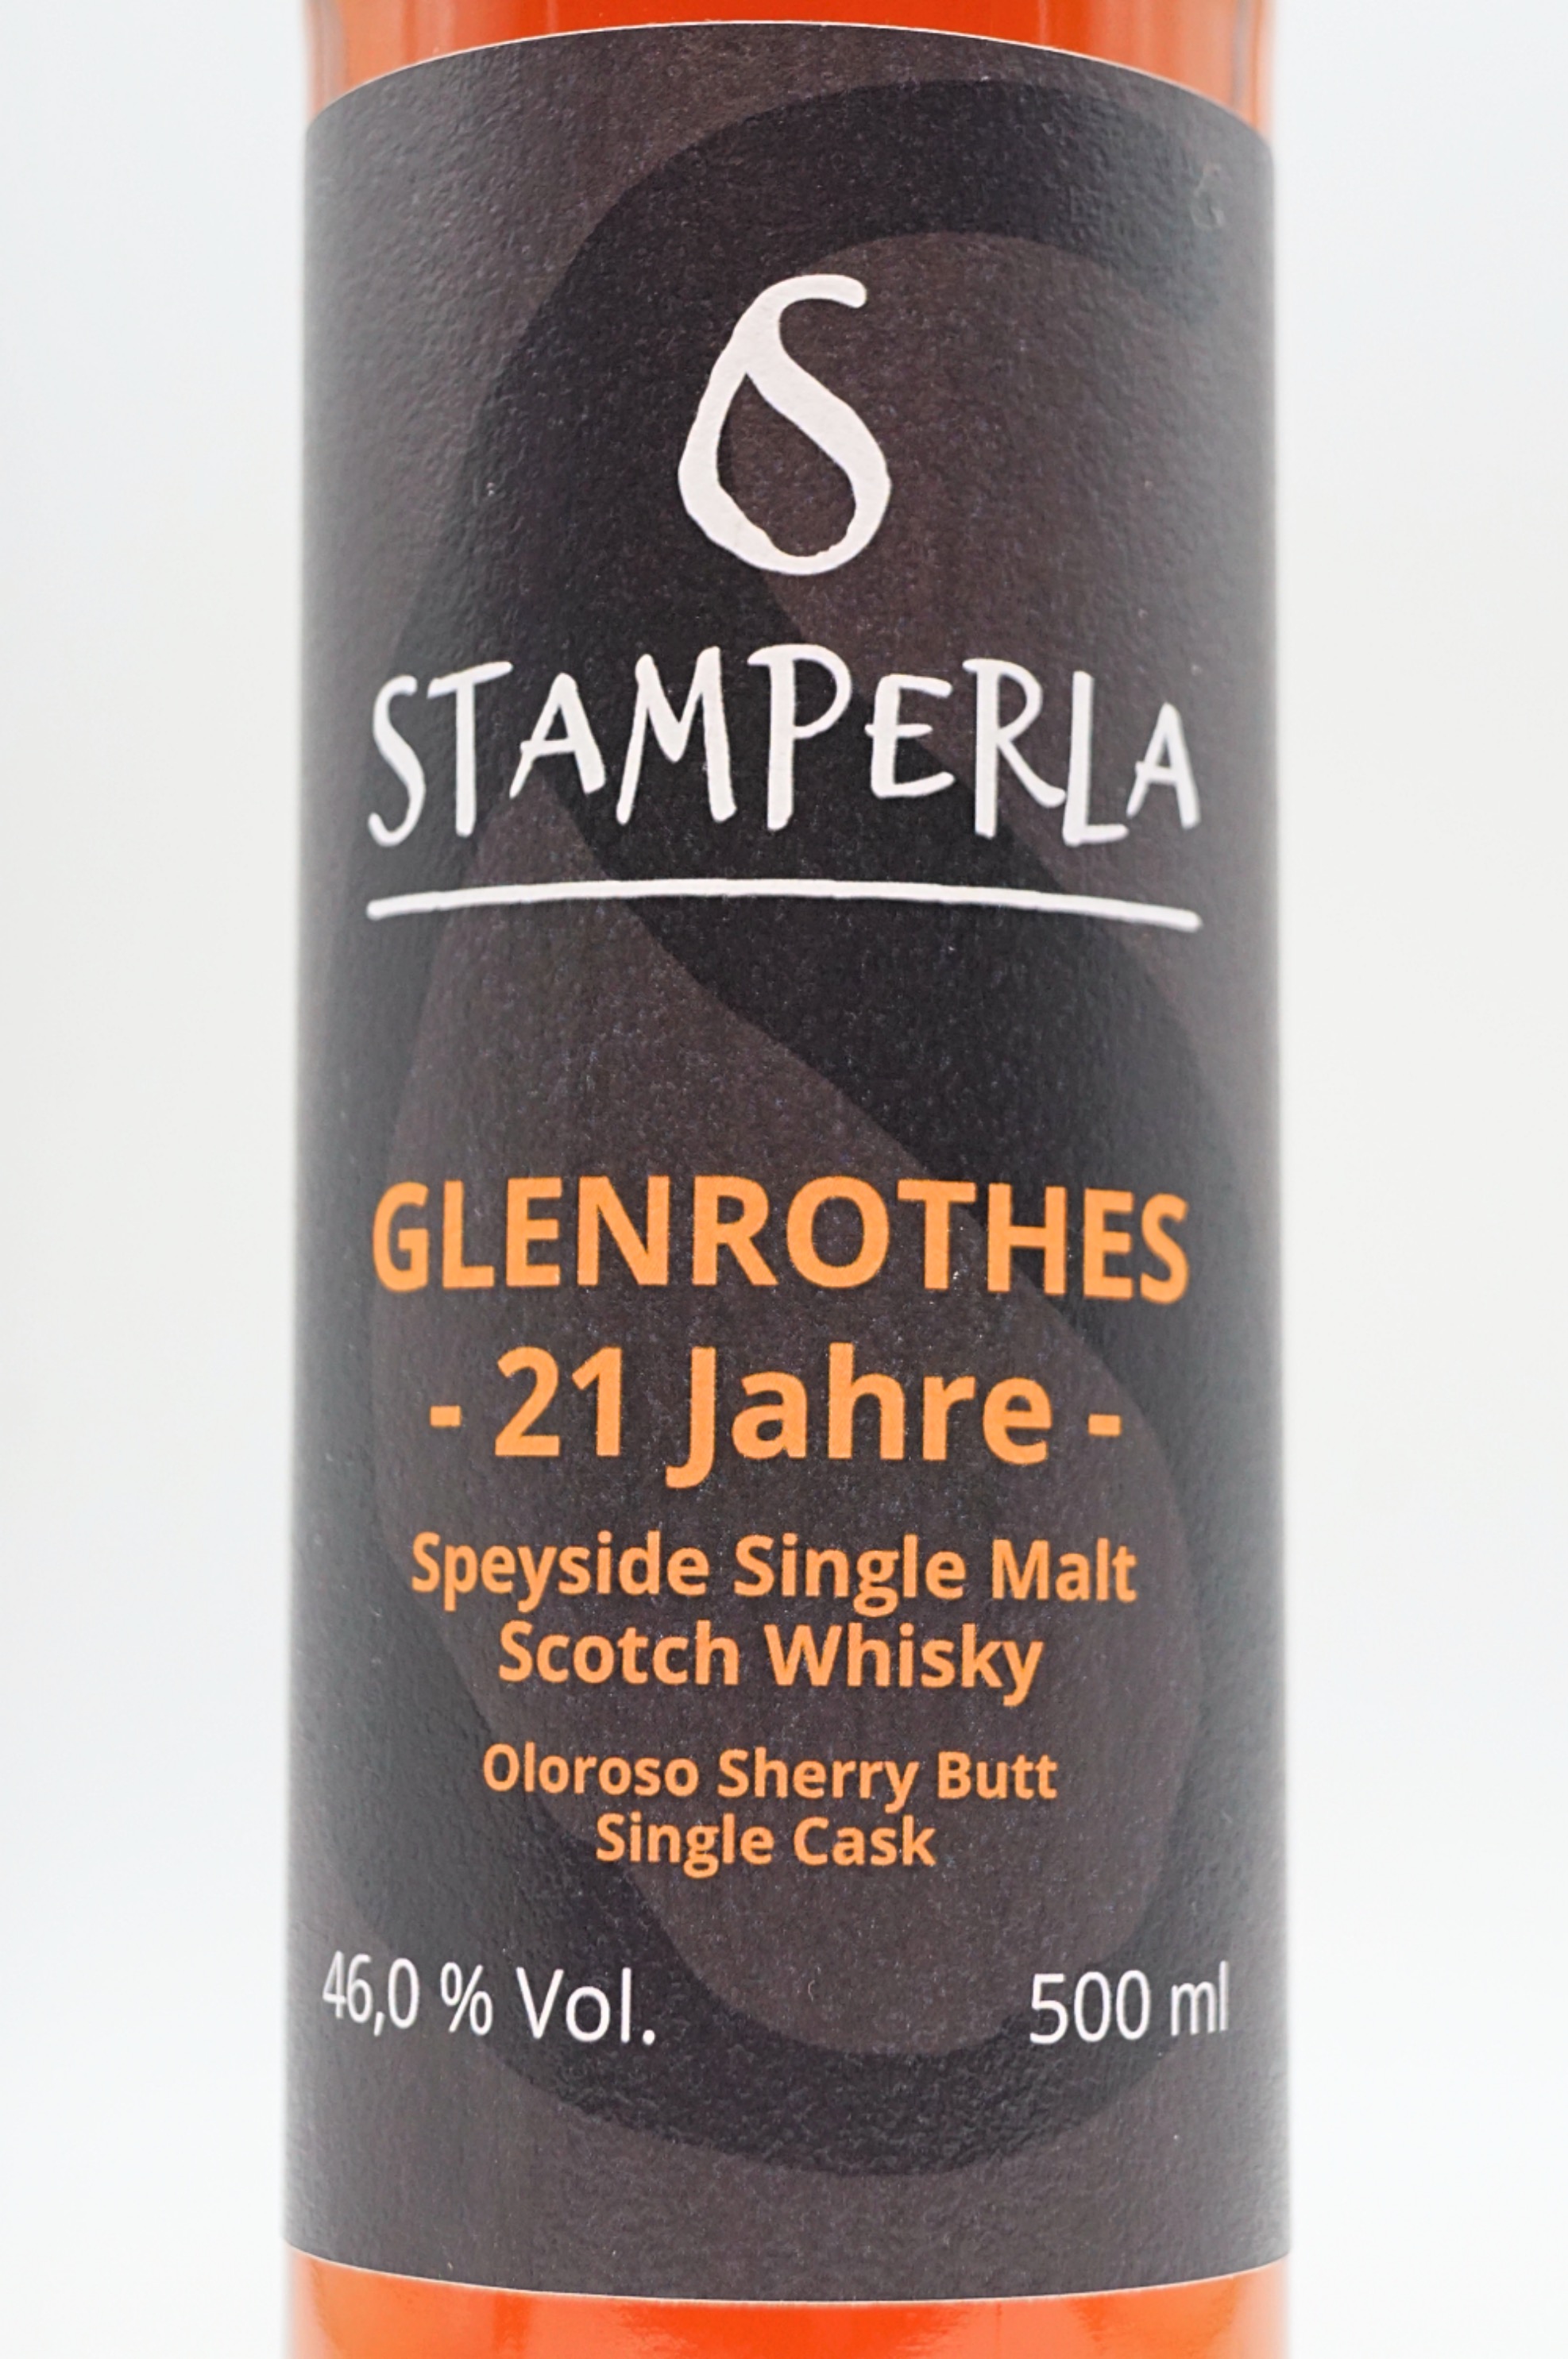 21 Jahre Glenrothes Speyside Single Malt Single Cask Scotch Whisky